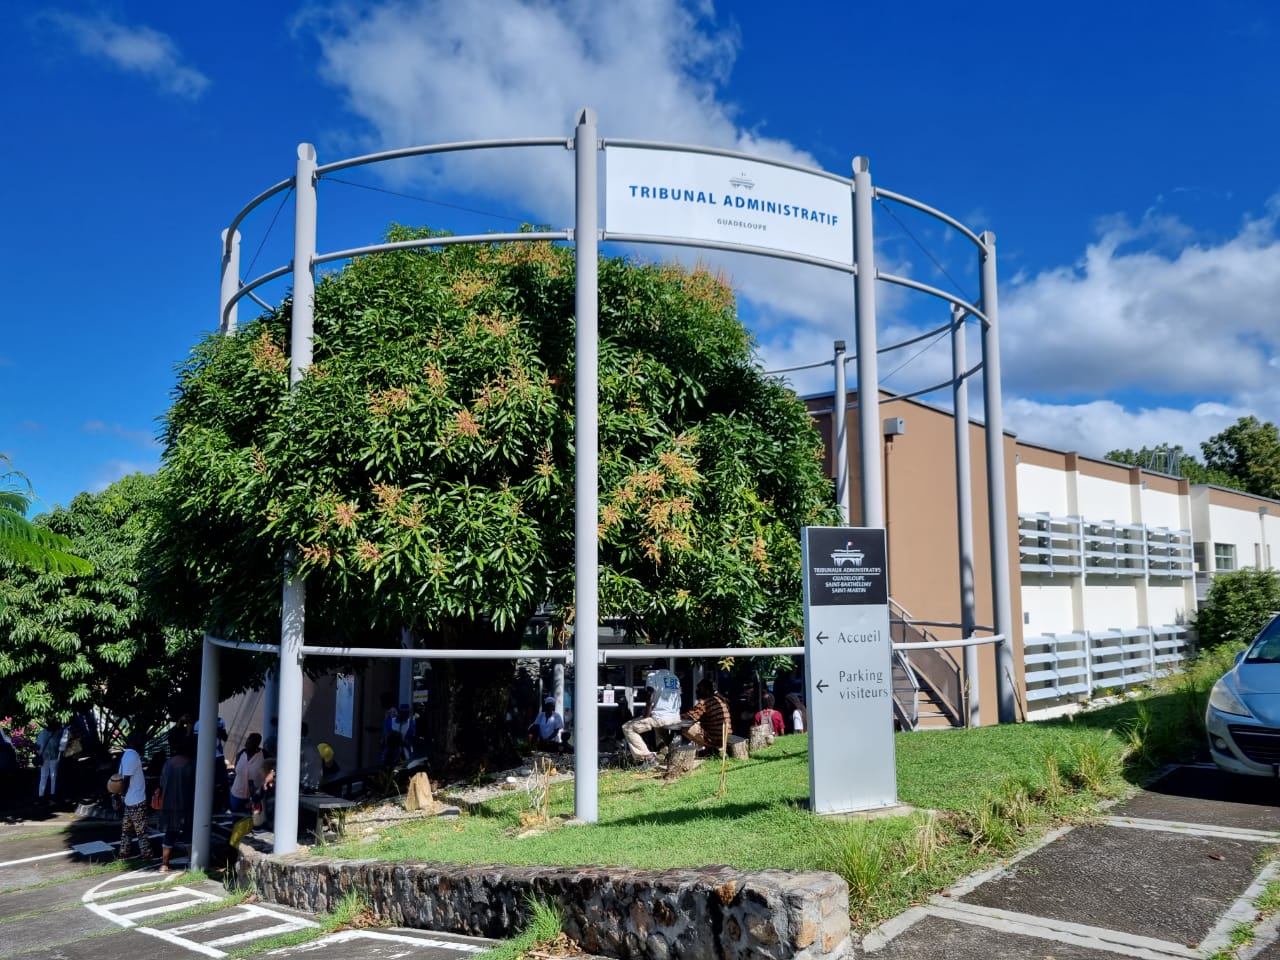     La requête de l’École panafricaine de Guadeloupe a été rejetée

